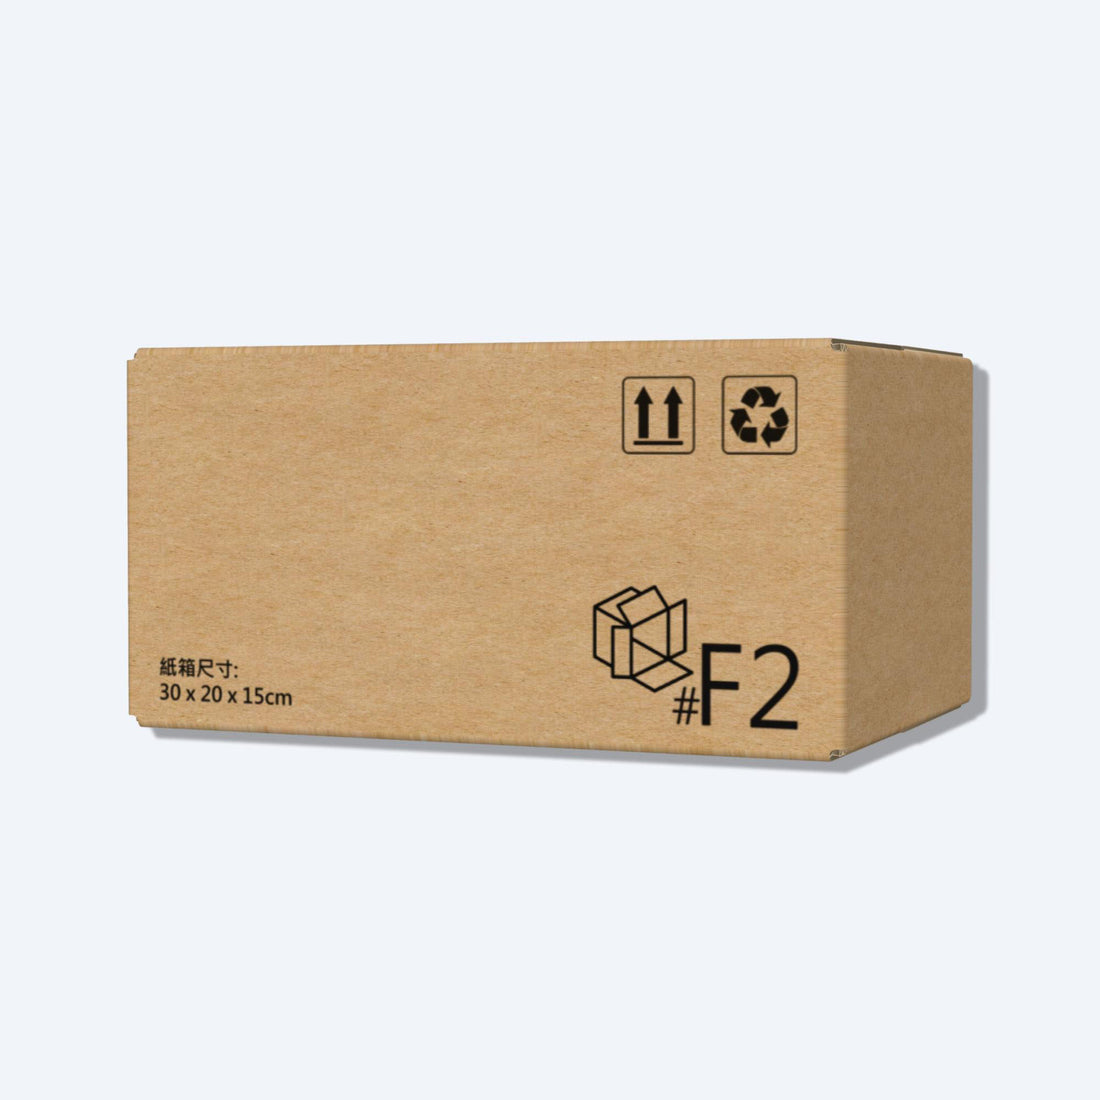 順豐速運F2尺寸紙箱側視圖，展示尺寸和質感，是適合中型物品運輸的理想選擇。